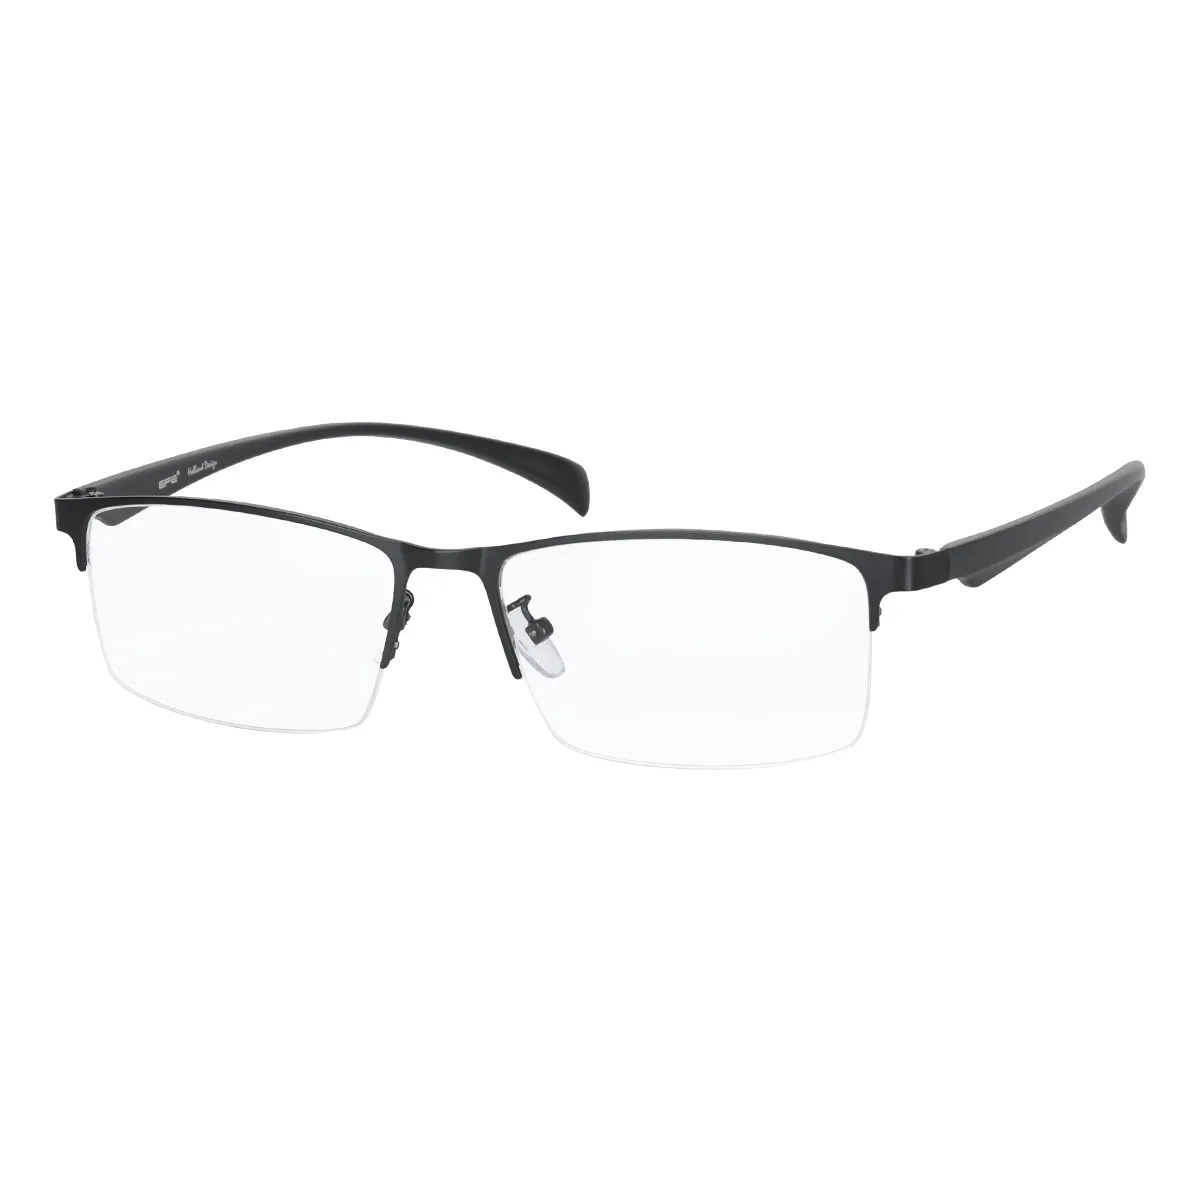 Kavin - Half-Rim Black Glasses for Men - EFE